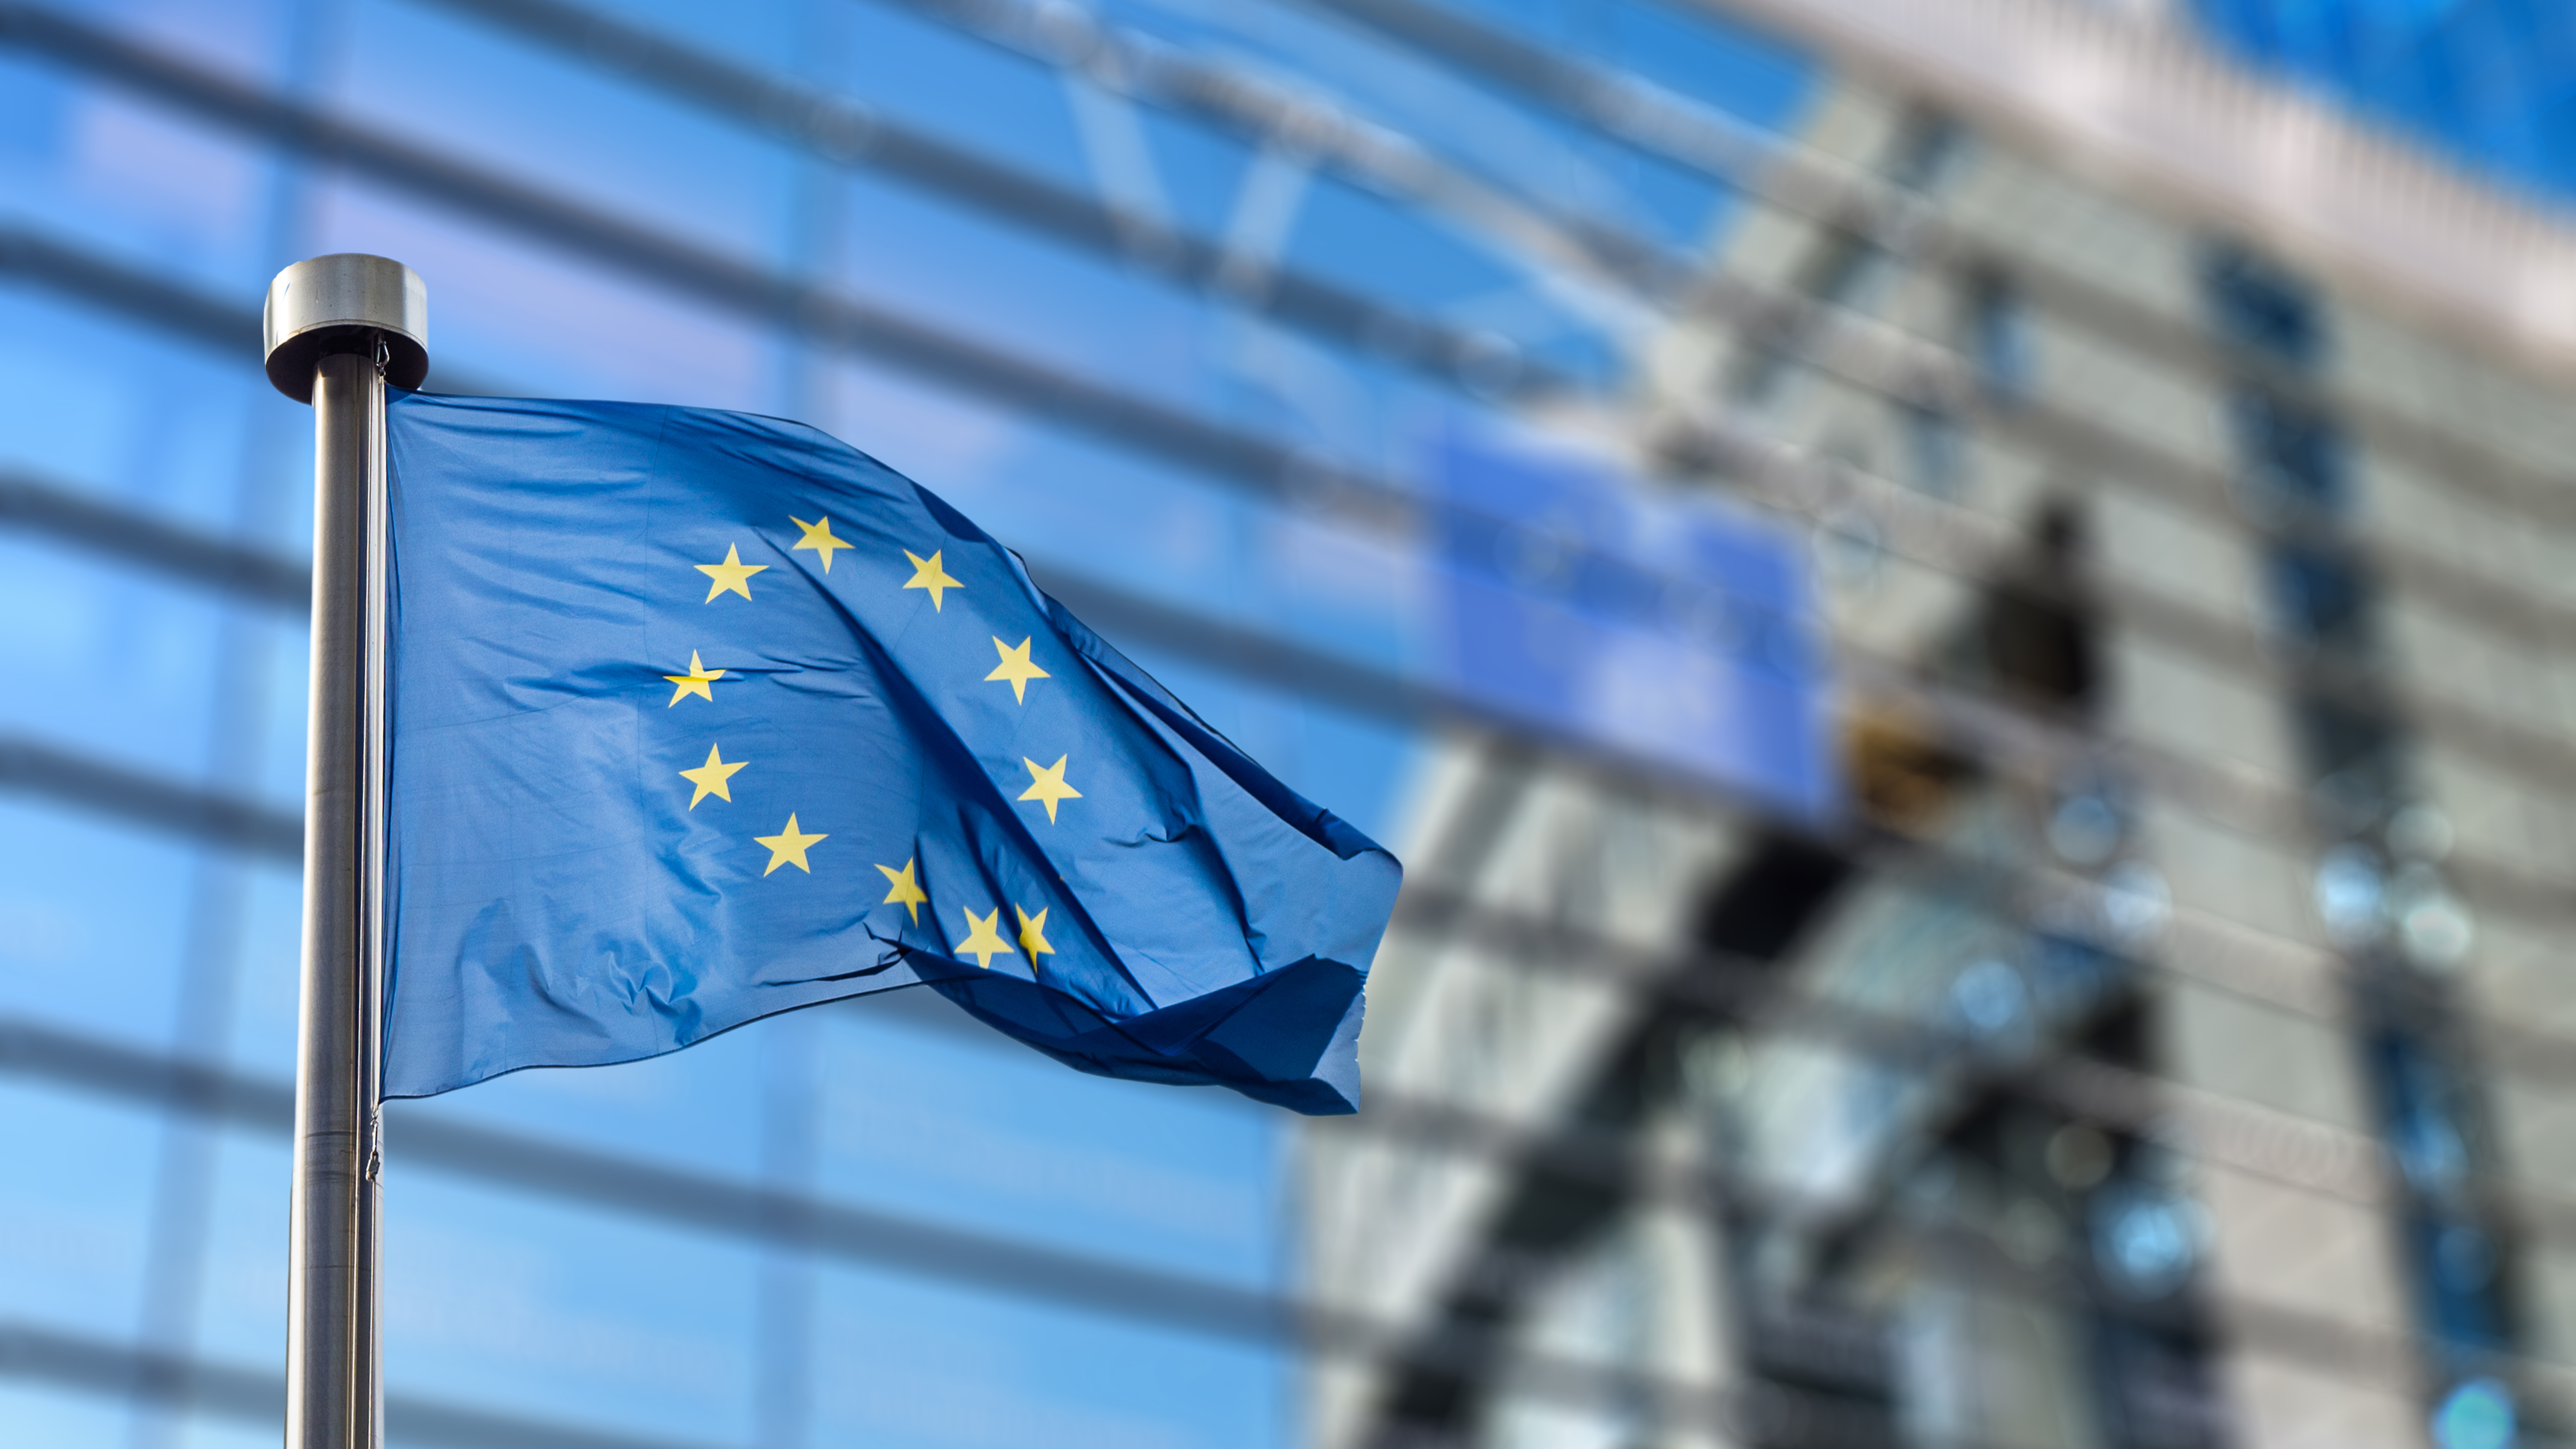 Ειδική έκθεση 18/2022: Θεσμικά όργανα της ΕΕ και πανδημία COVID-19 – Ταχεία η απόκρισή τους, ωστόσο πρόκληση παραμένει η αξιοποίηση της καινοτομίας και της ευελιξίας που αναδύθηκαν από την κρίση